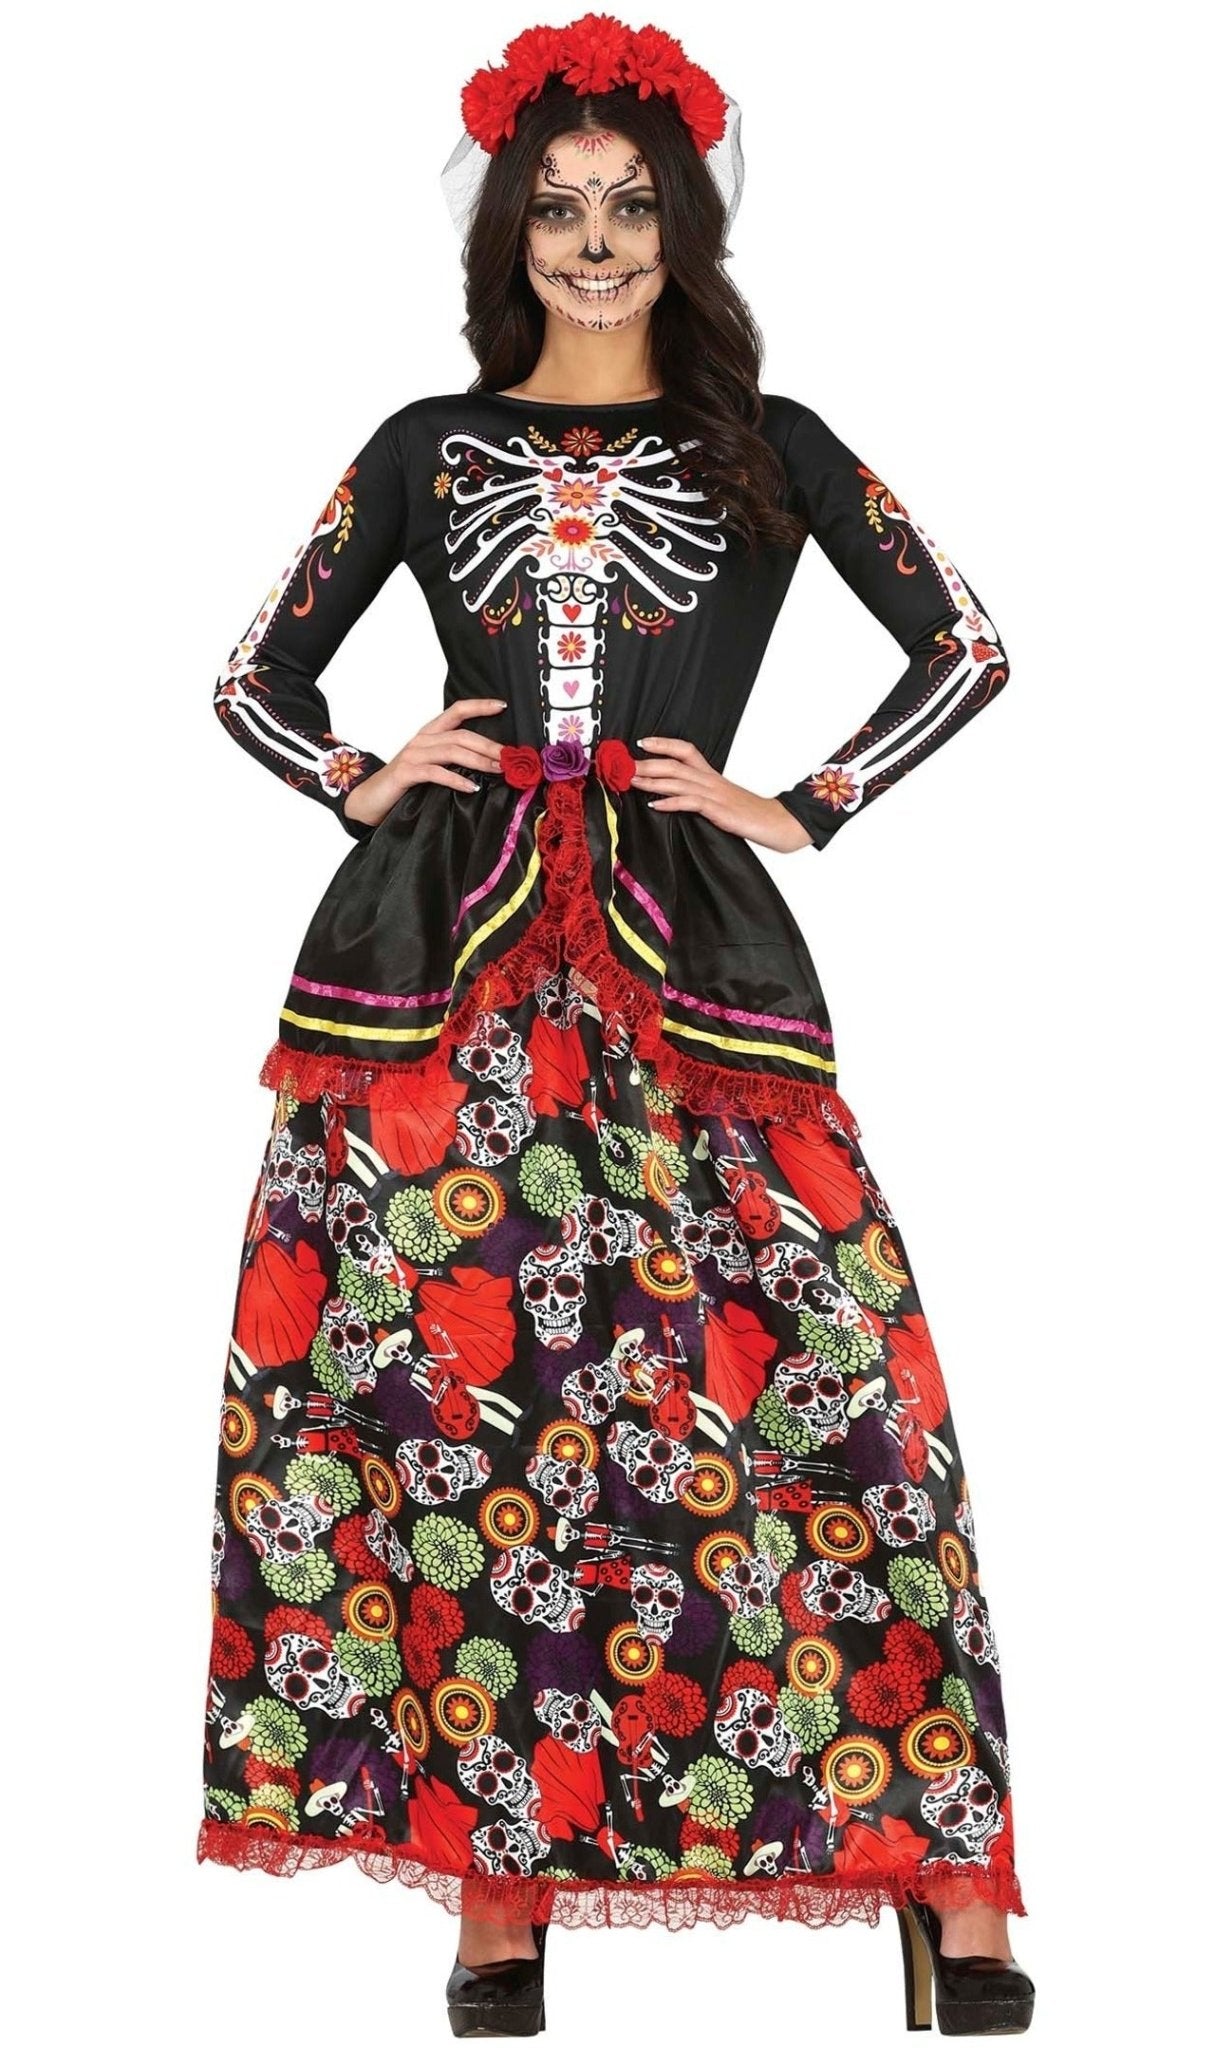 Costume messicano rosso Dia de los Muertos donna: ,e vestiti di